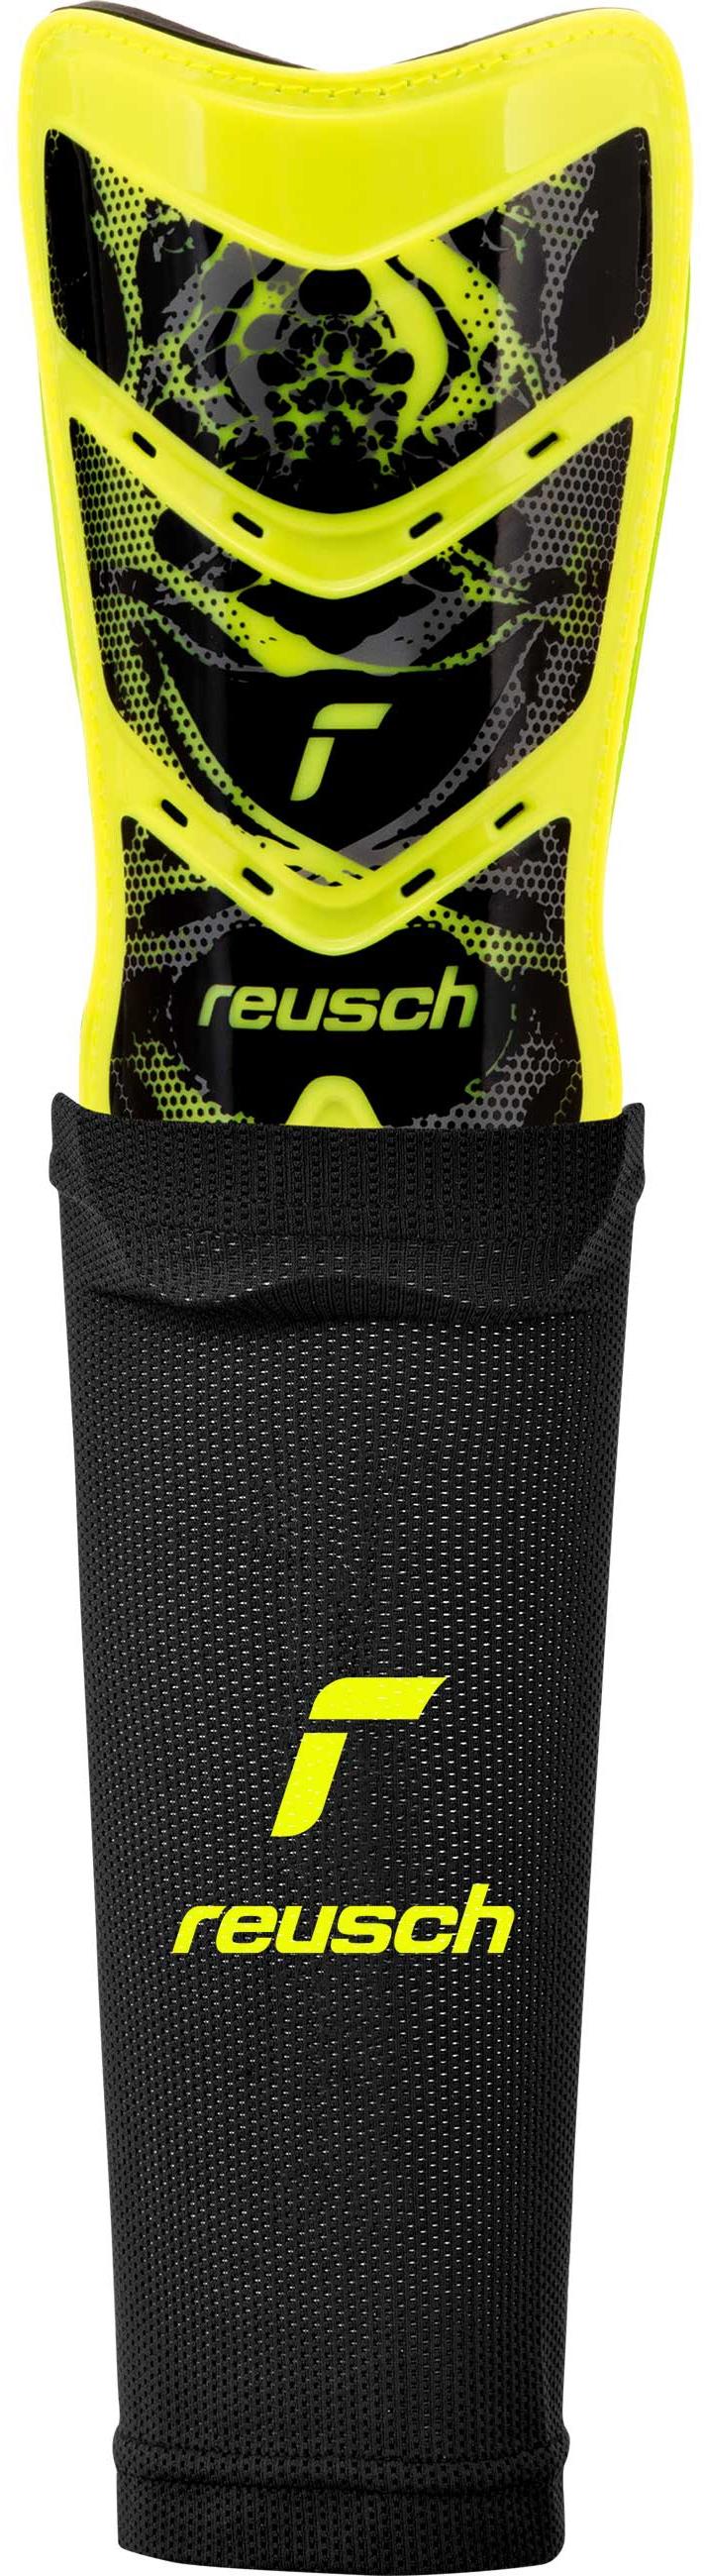 Reusch Reusch Shinguard Attrakt Supreme Schienbeinschoner 2700 safety  yellow / black im Online Shop von SportScheck kaufen